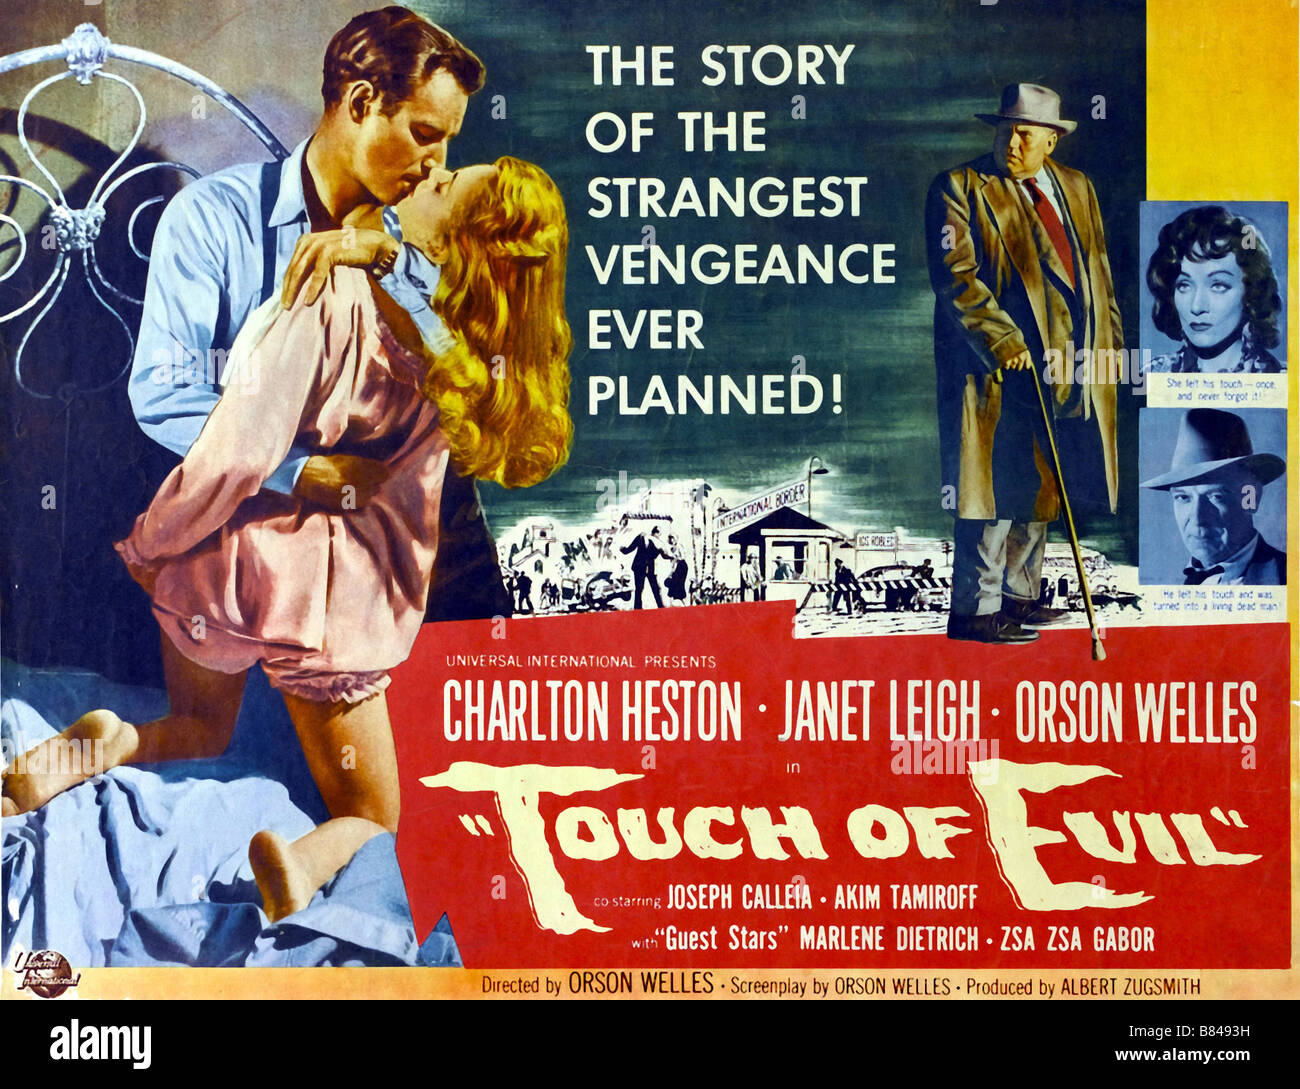 Toccare del male Anno: 1958 - USA Charlton Heston, Janet Leigh, Orson Welles Regista: Orson Welles Movie poster (USA) Foto Stock